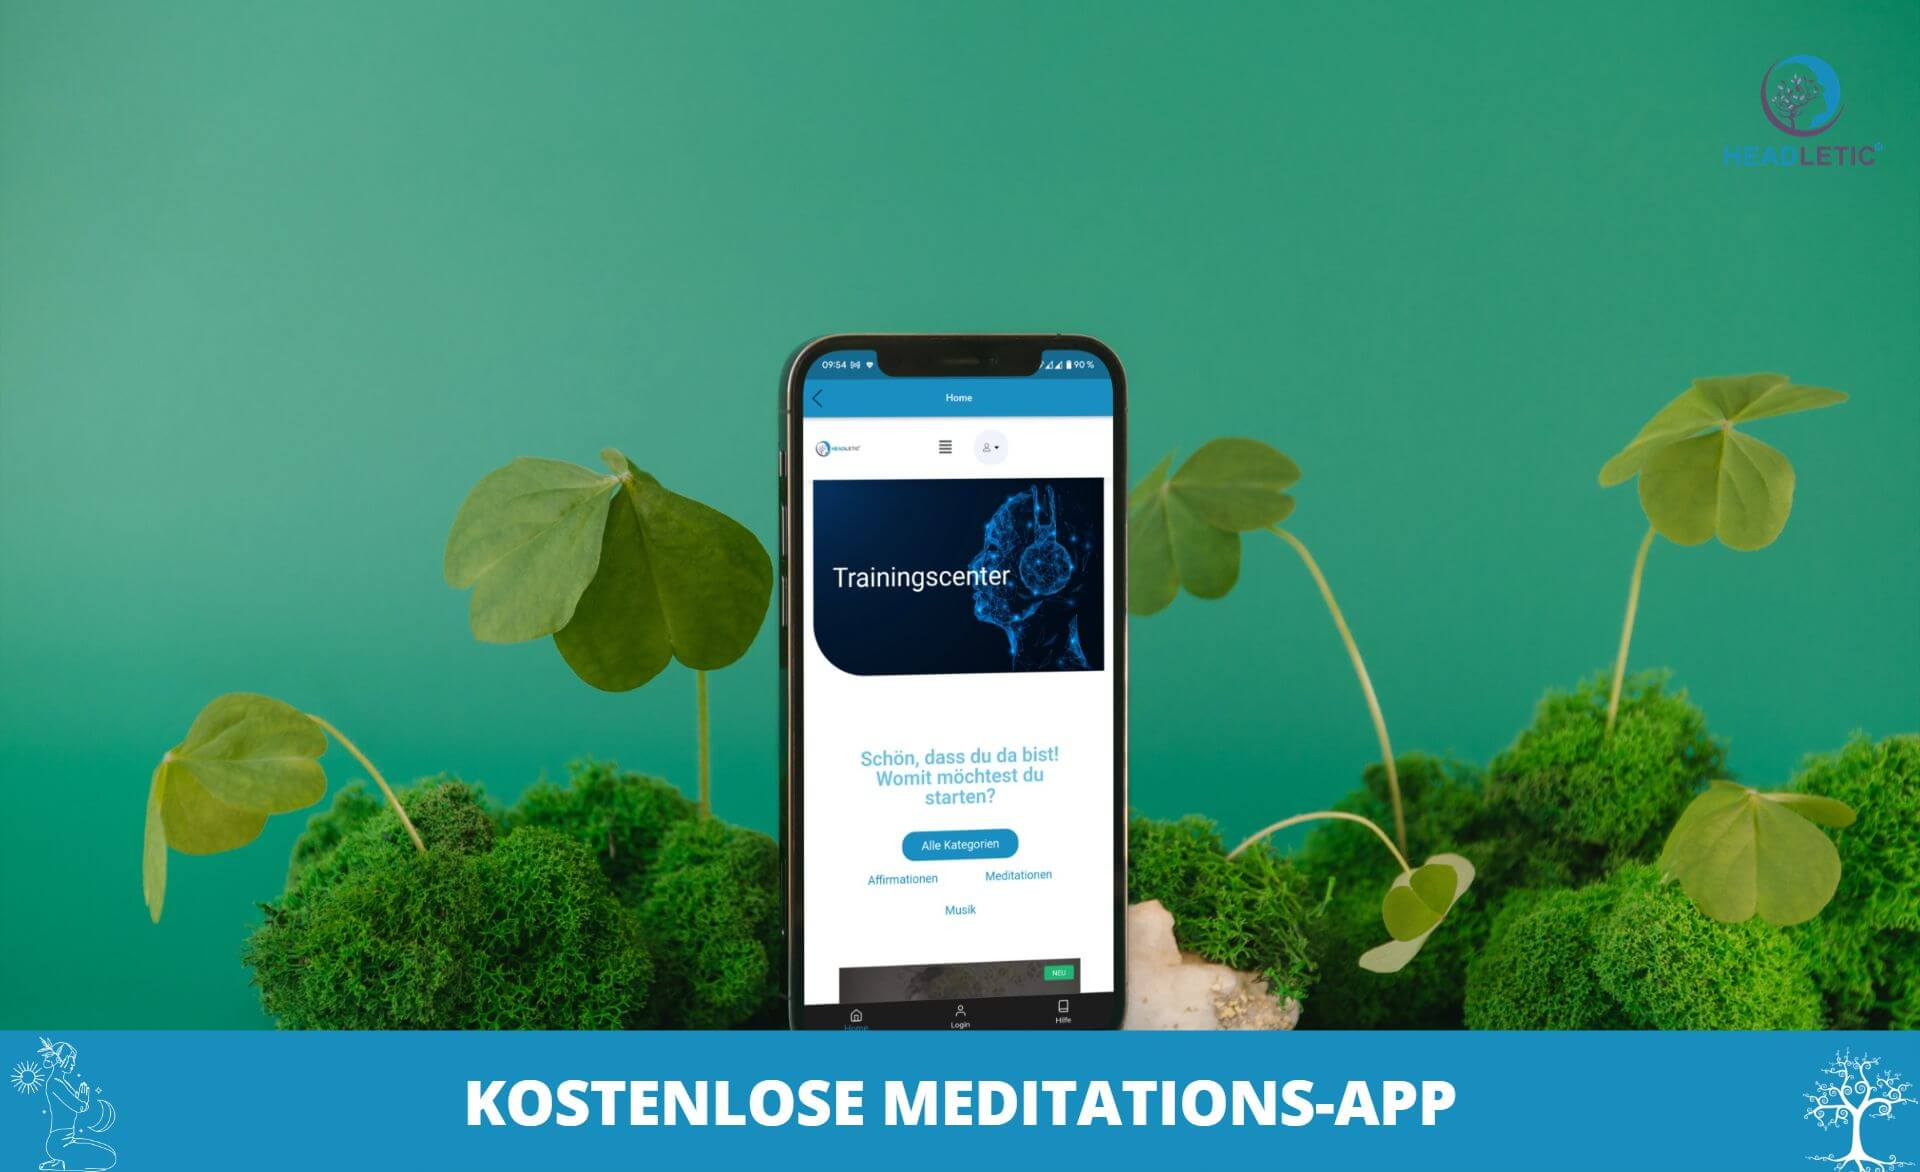 Welche Meditations App ist wirklich kostenlos